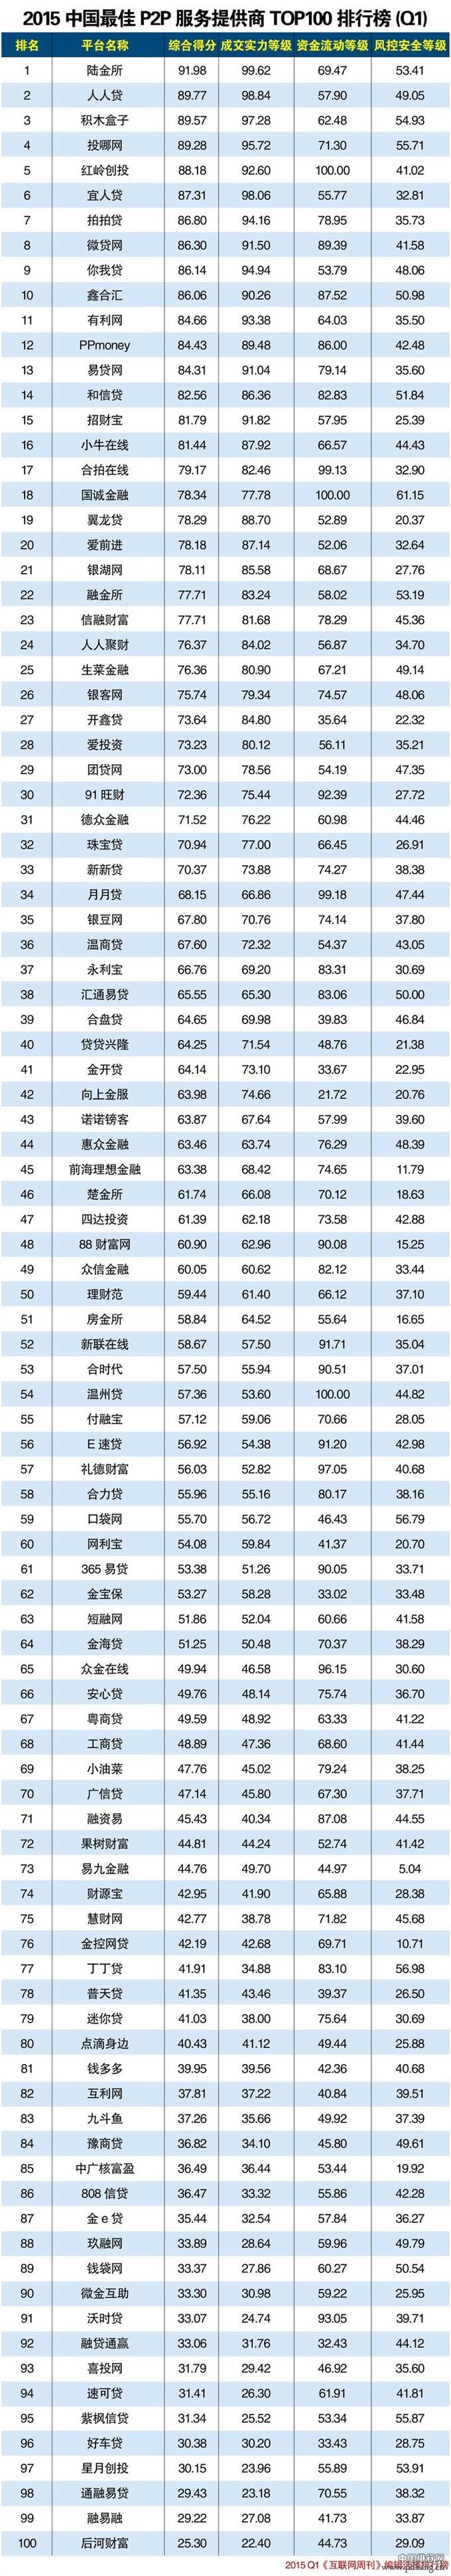 2015年第一季度中国最佳P2P服务提供商排行榜TOP100